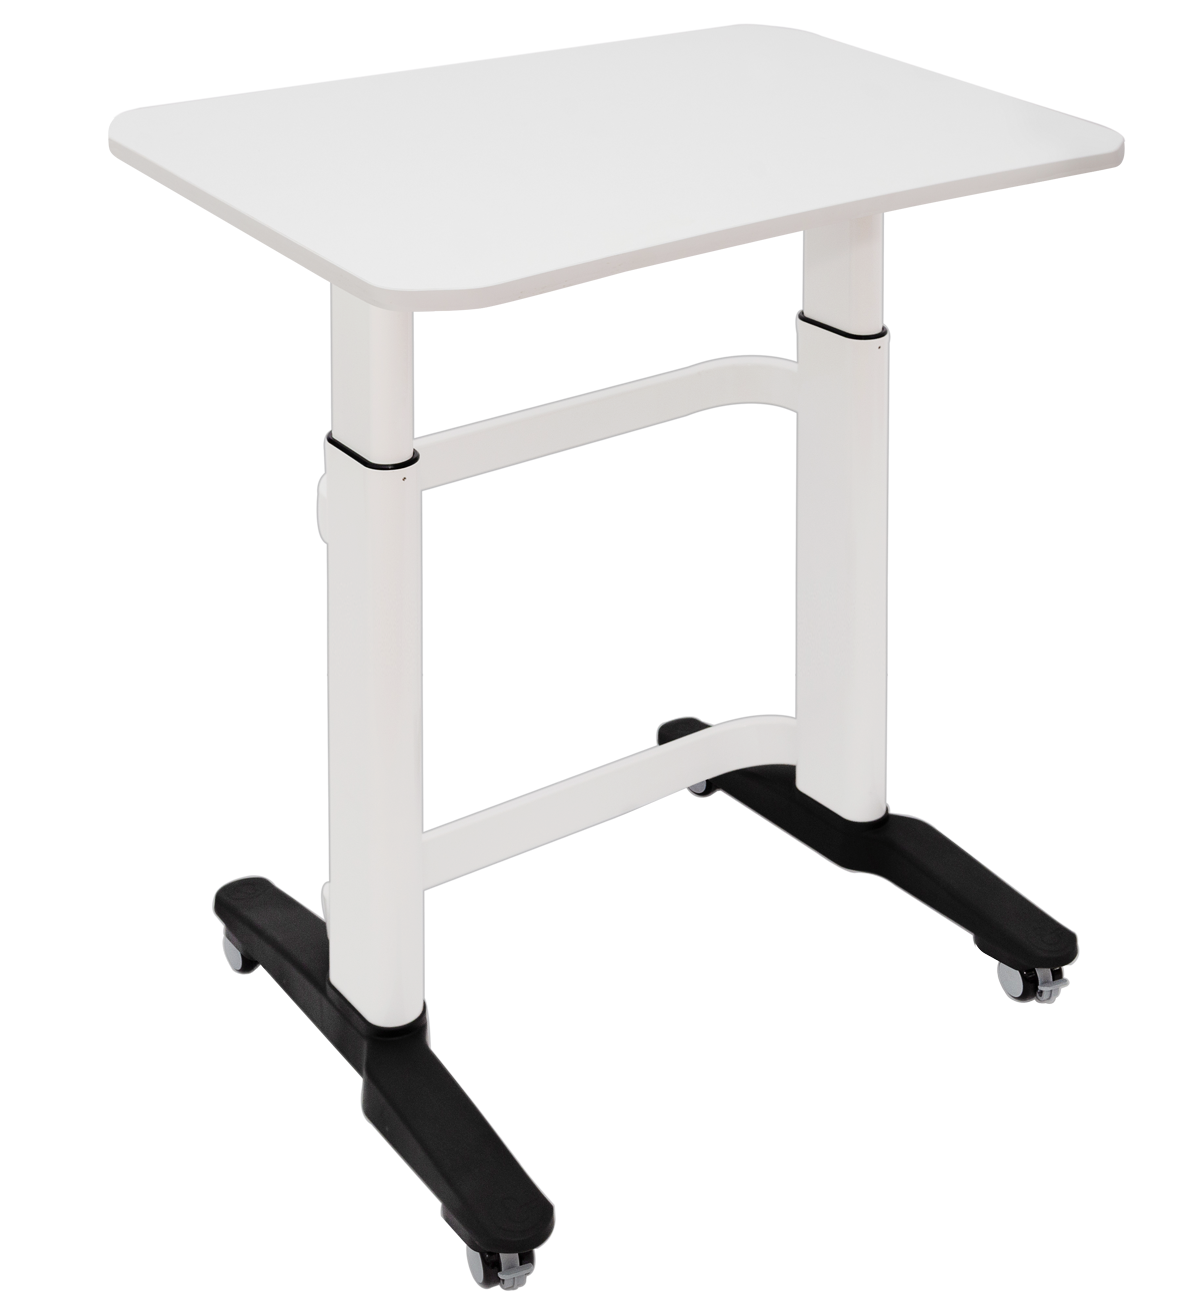 Amperstand-Large-Teacher Desk-75mm Castors